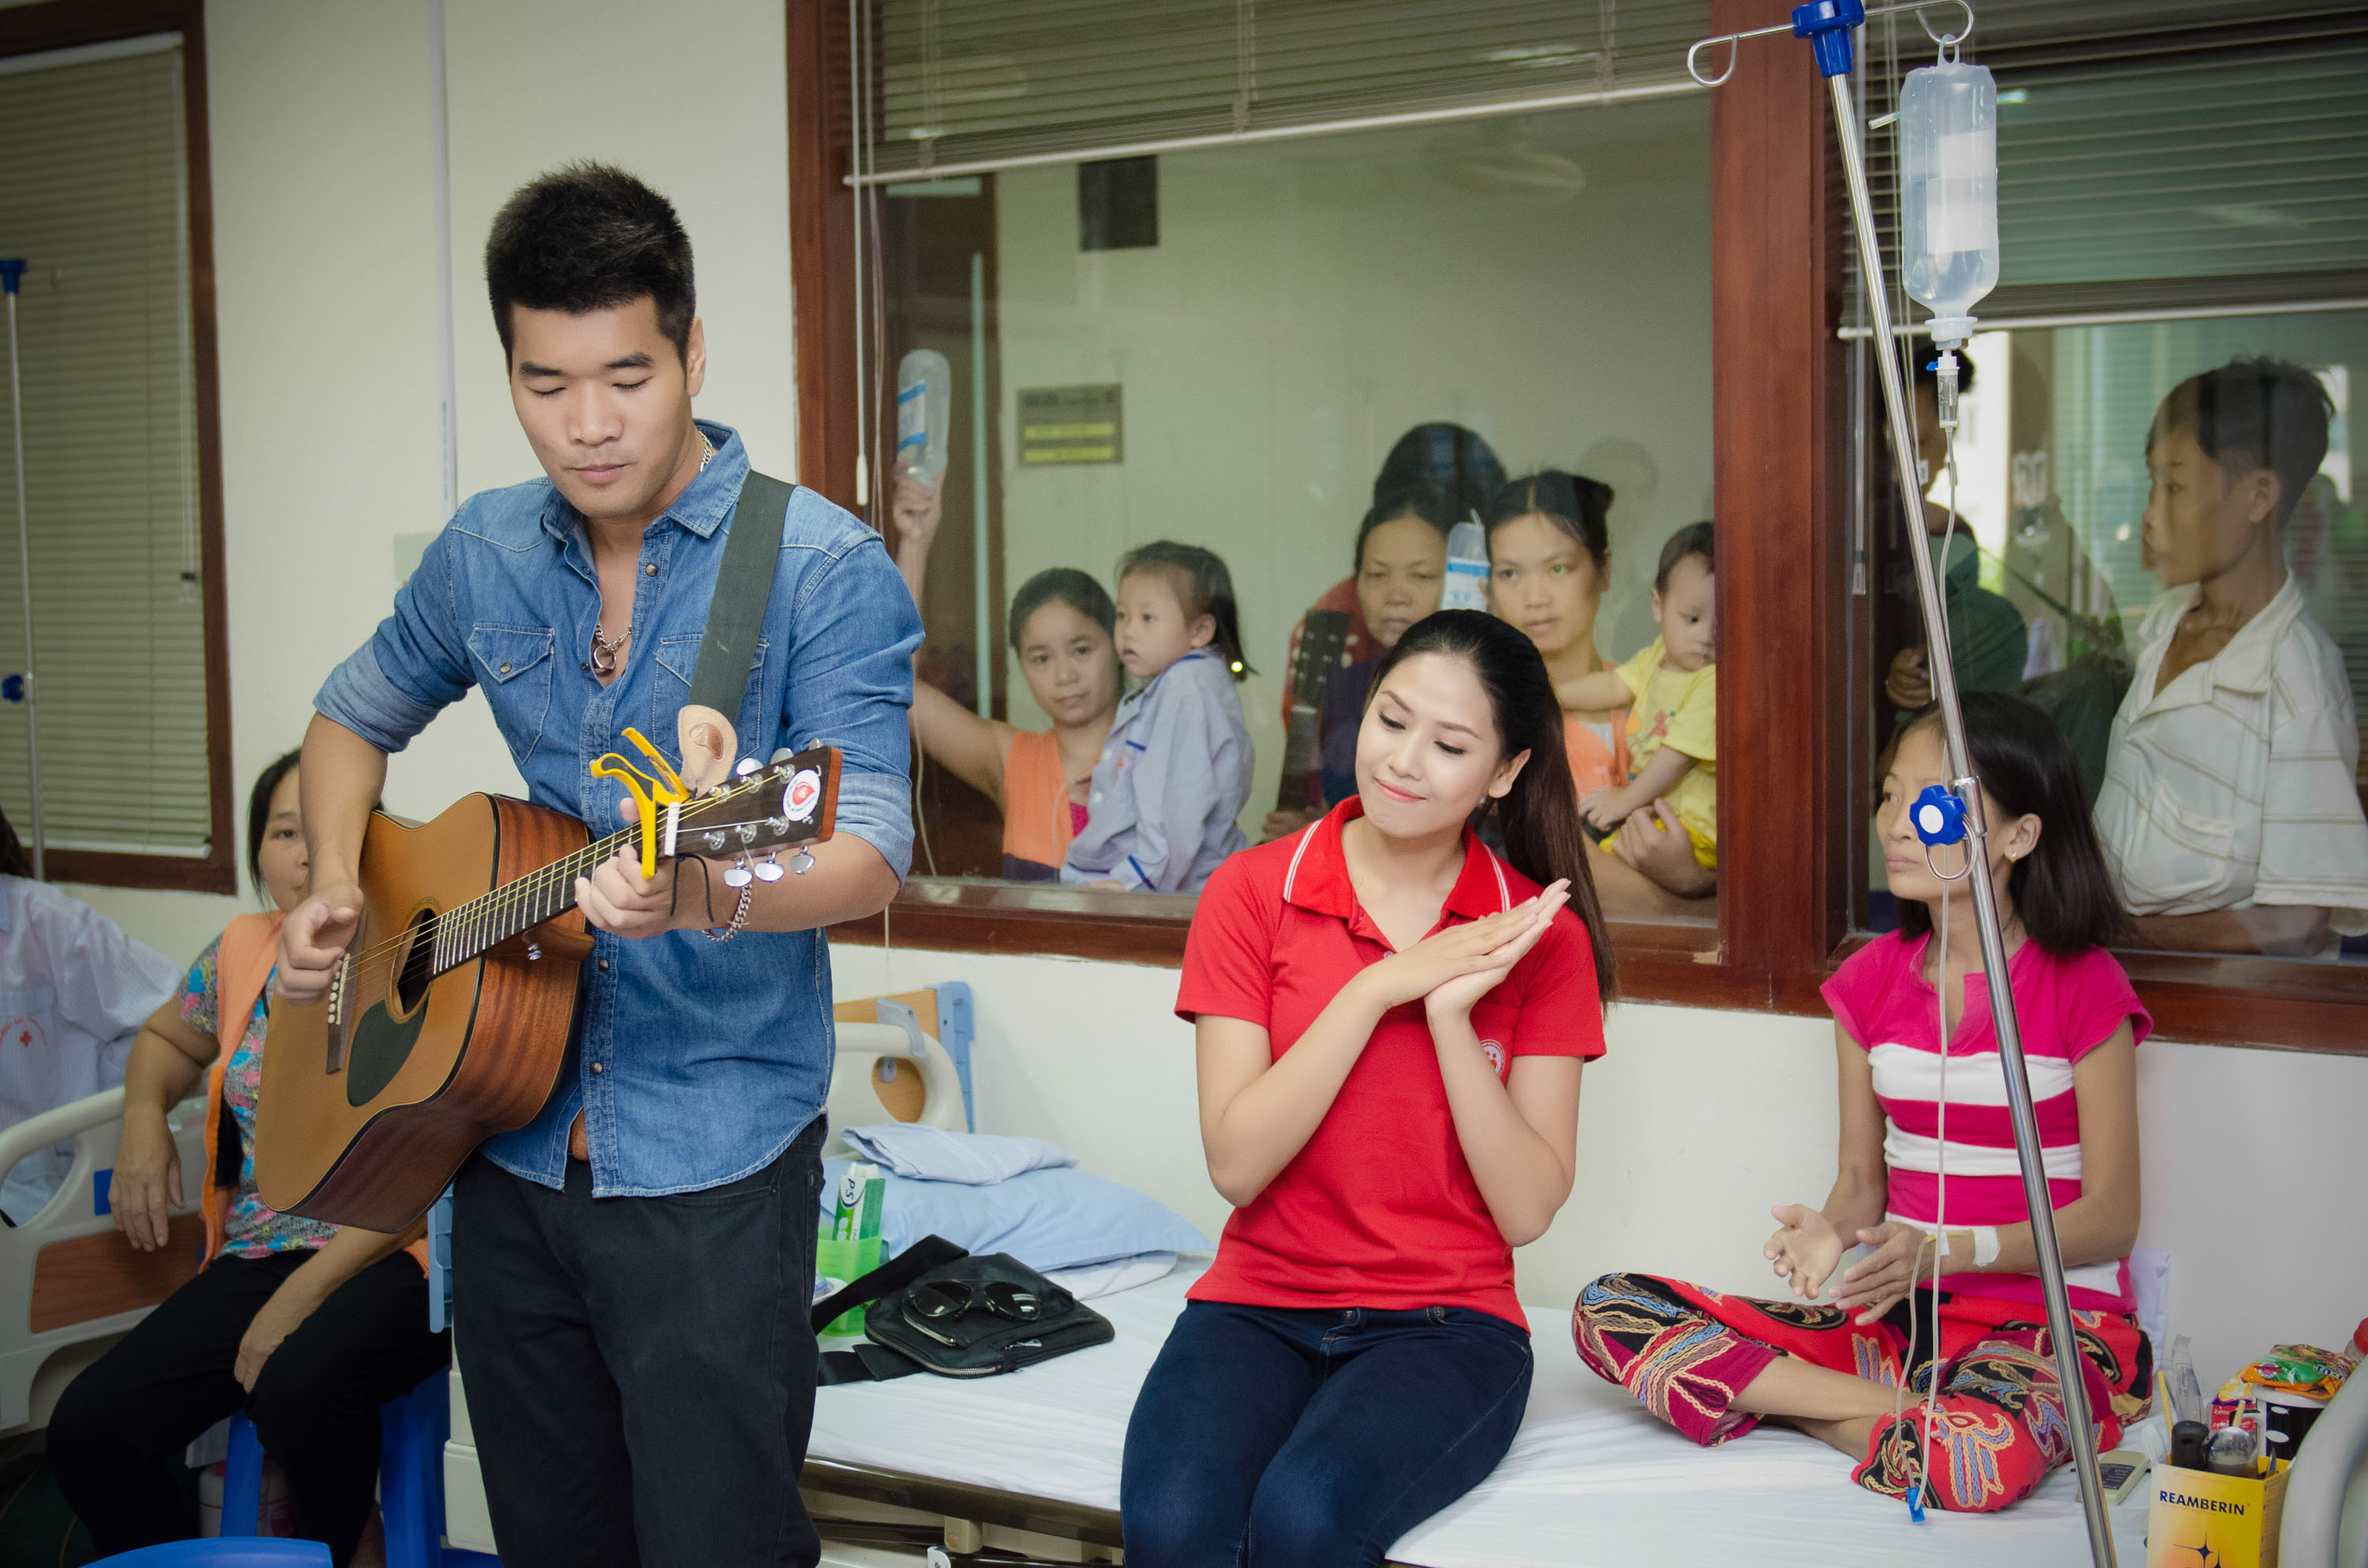 Ngoài ra, chương trình cũng có sự tham gia của khách mời đặc biệt là ca sĩ Tạ Quang Thắng- người đã đồng hành rất nhiều với các hoạt động hiến máu trong thời gian gần đây.